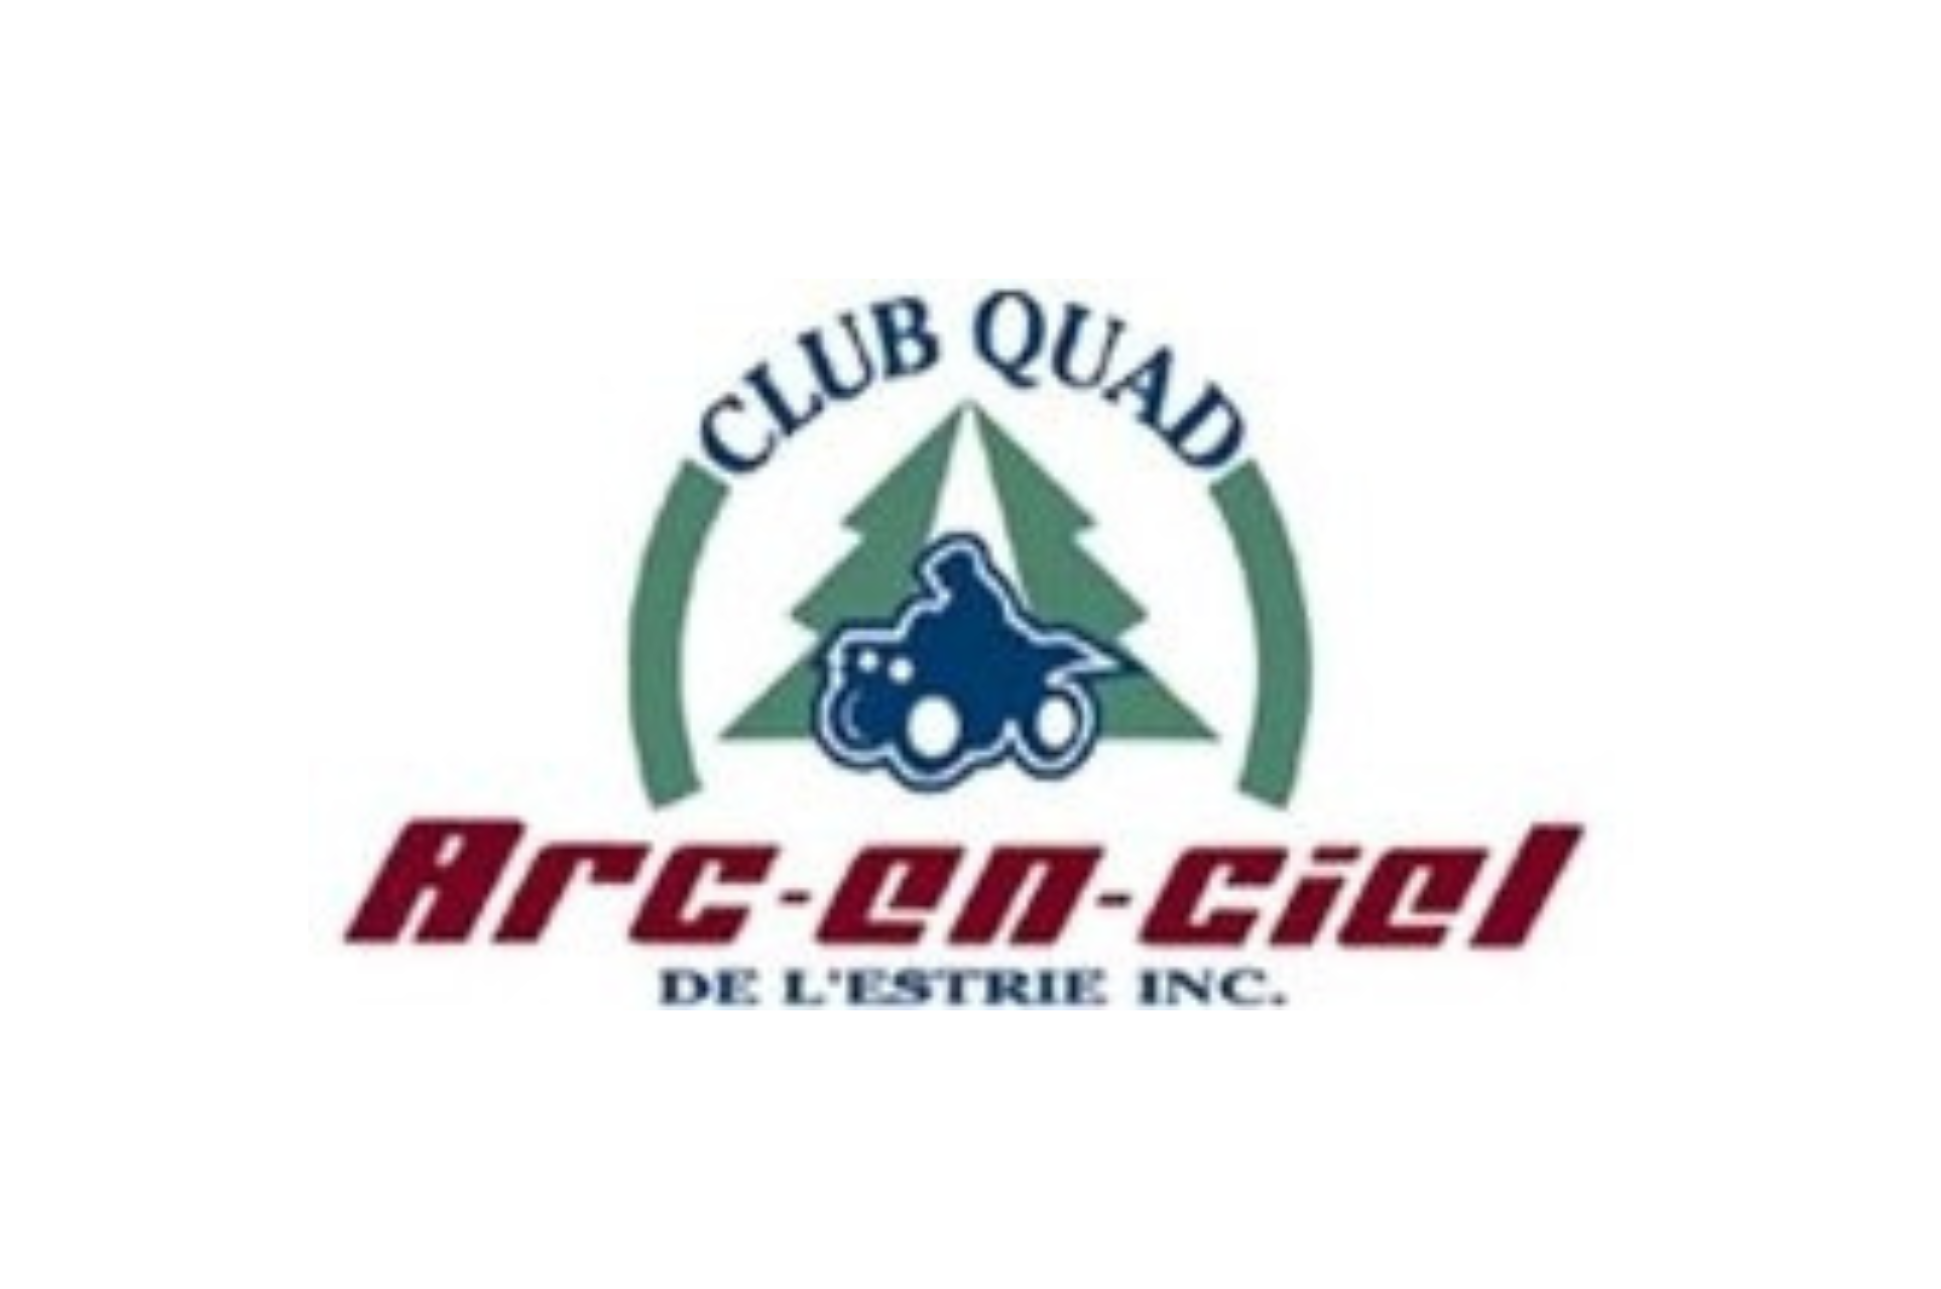 Club Quad Arc-en-ciel de l'Estrie inc.